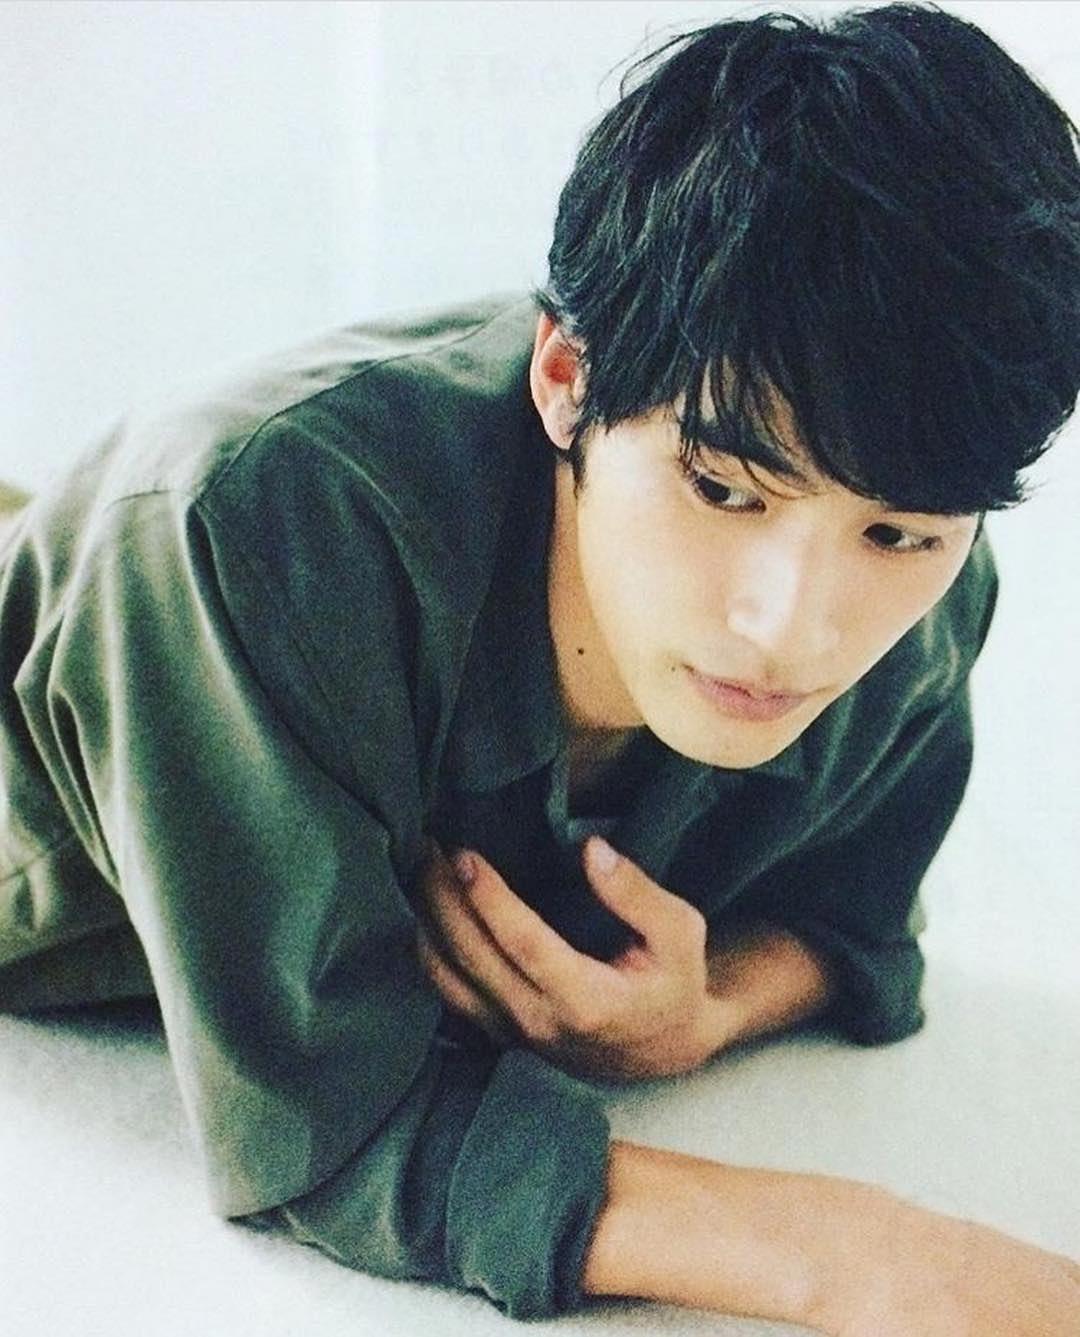 1999 年出生的冈田健史是一位年轻的日本演员。今年